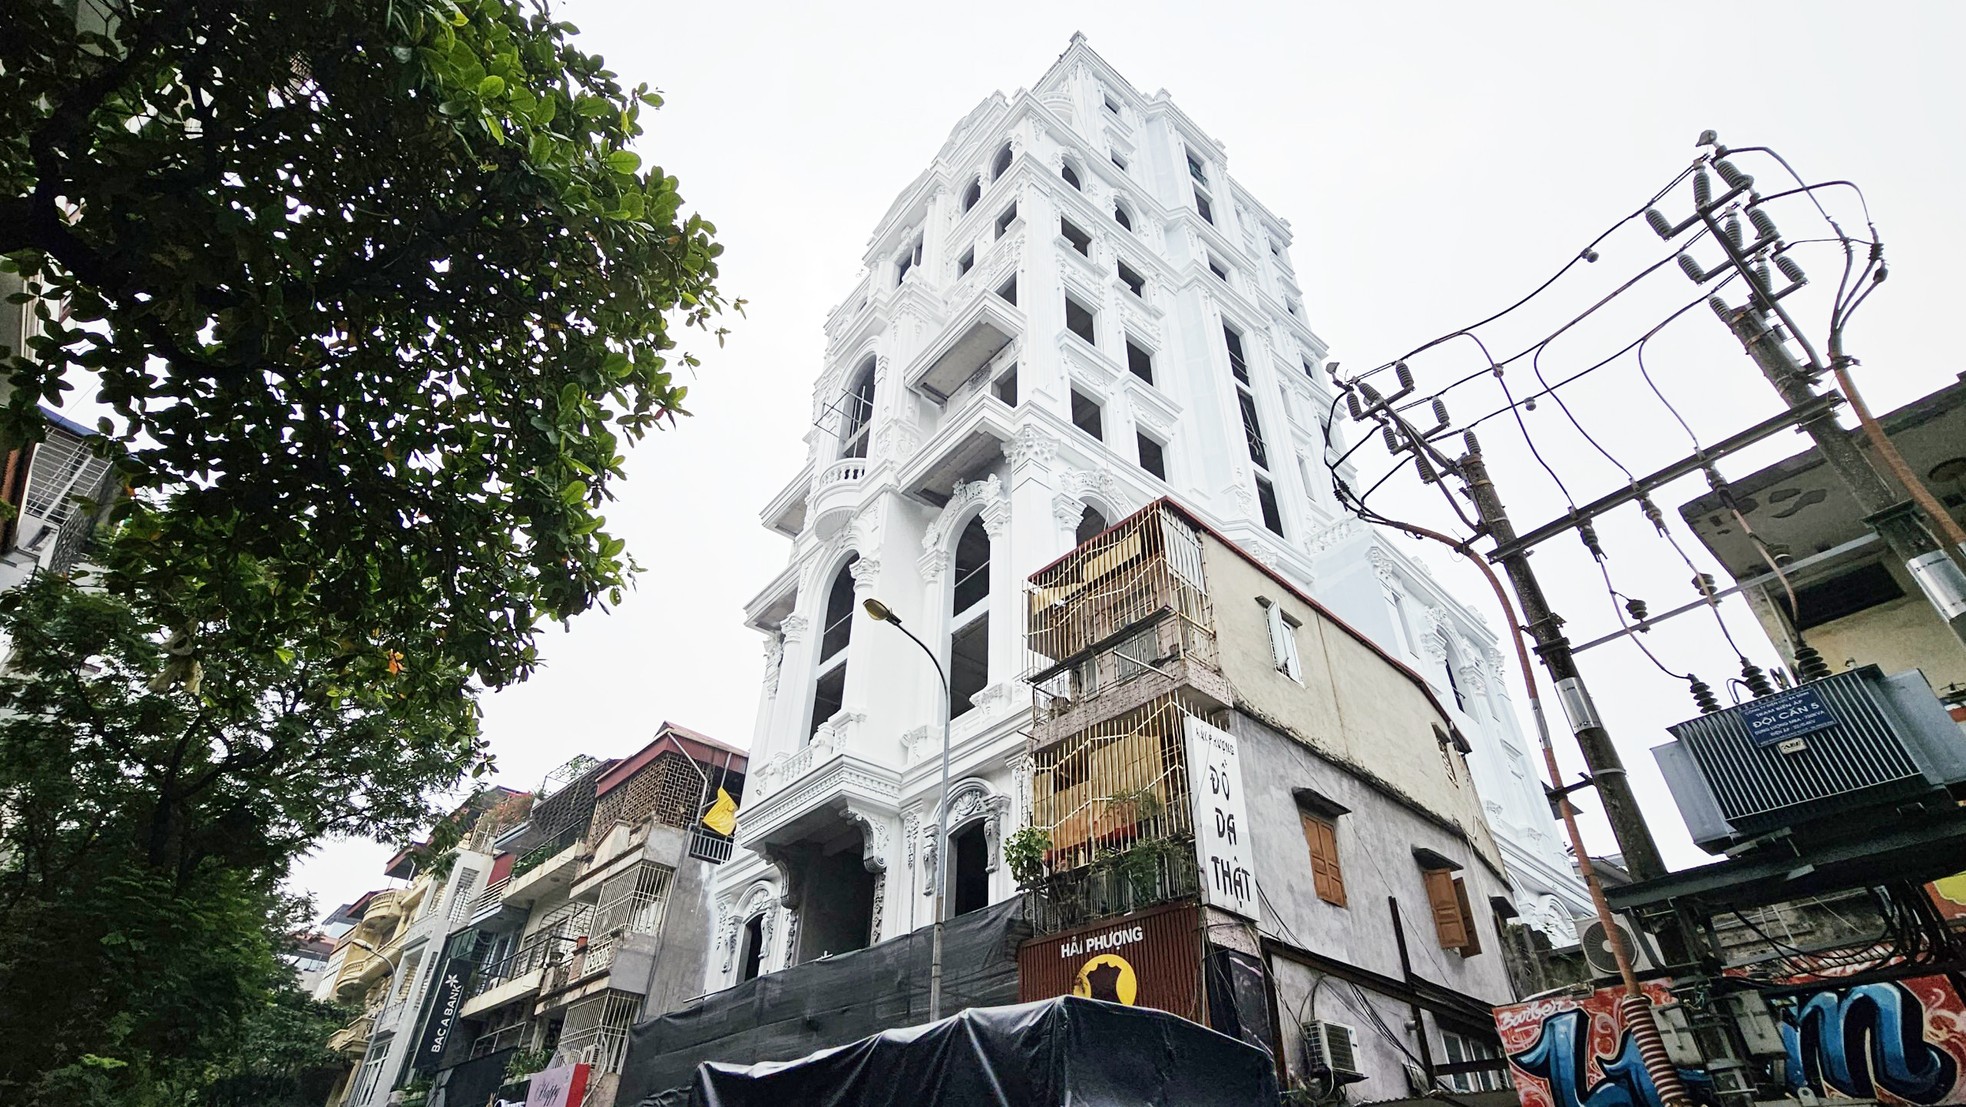 Cao ốc 10 tầng quận trung tâm không tìm thấy hồ sơ cấp phép khi Hà Nội yêu cầu làm rõ - Ảnh 14.